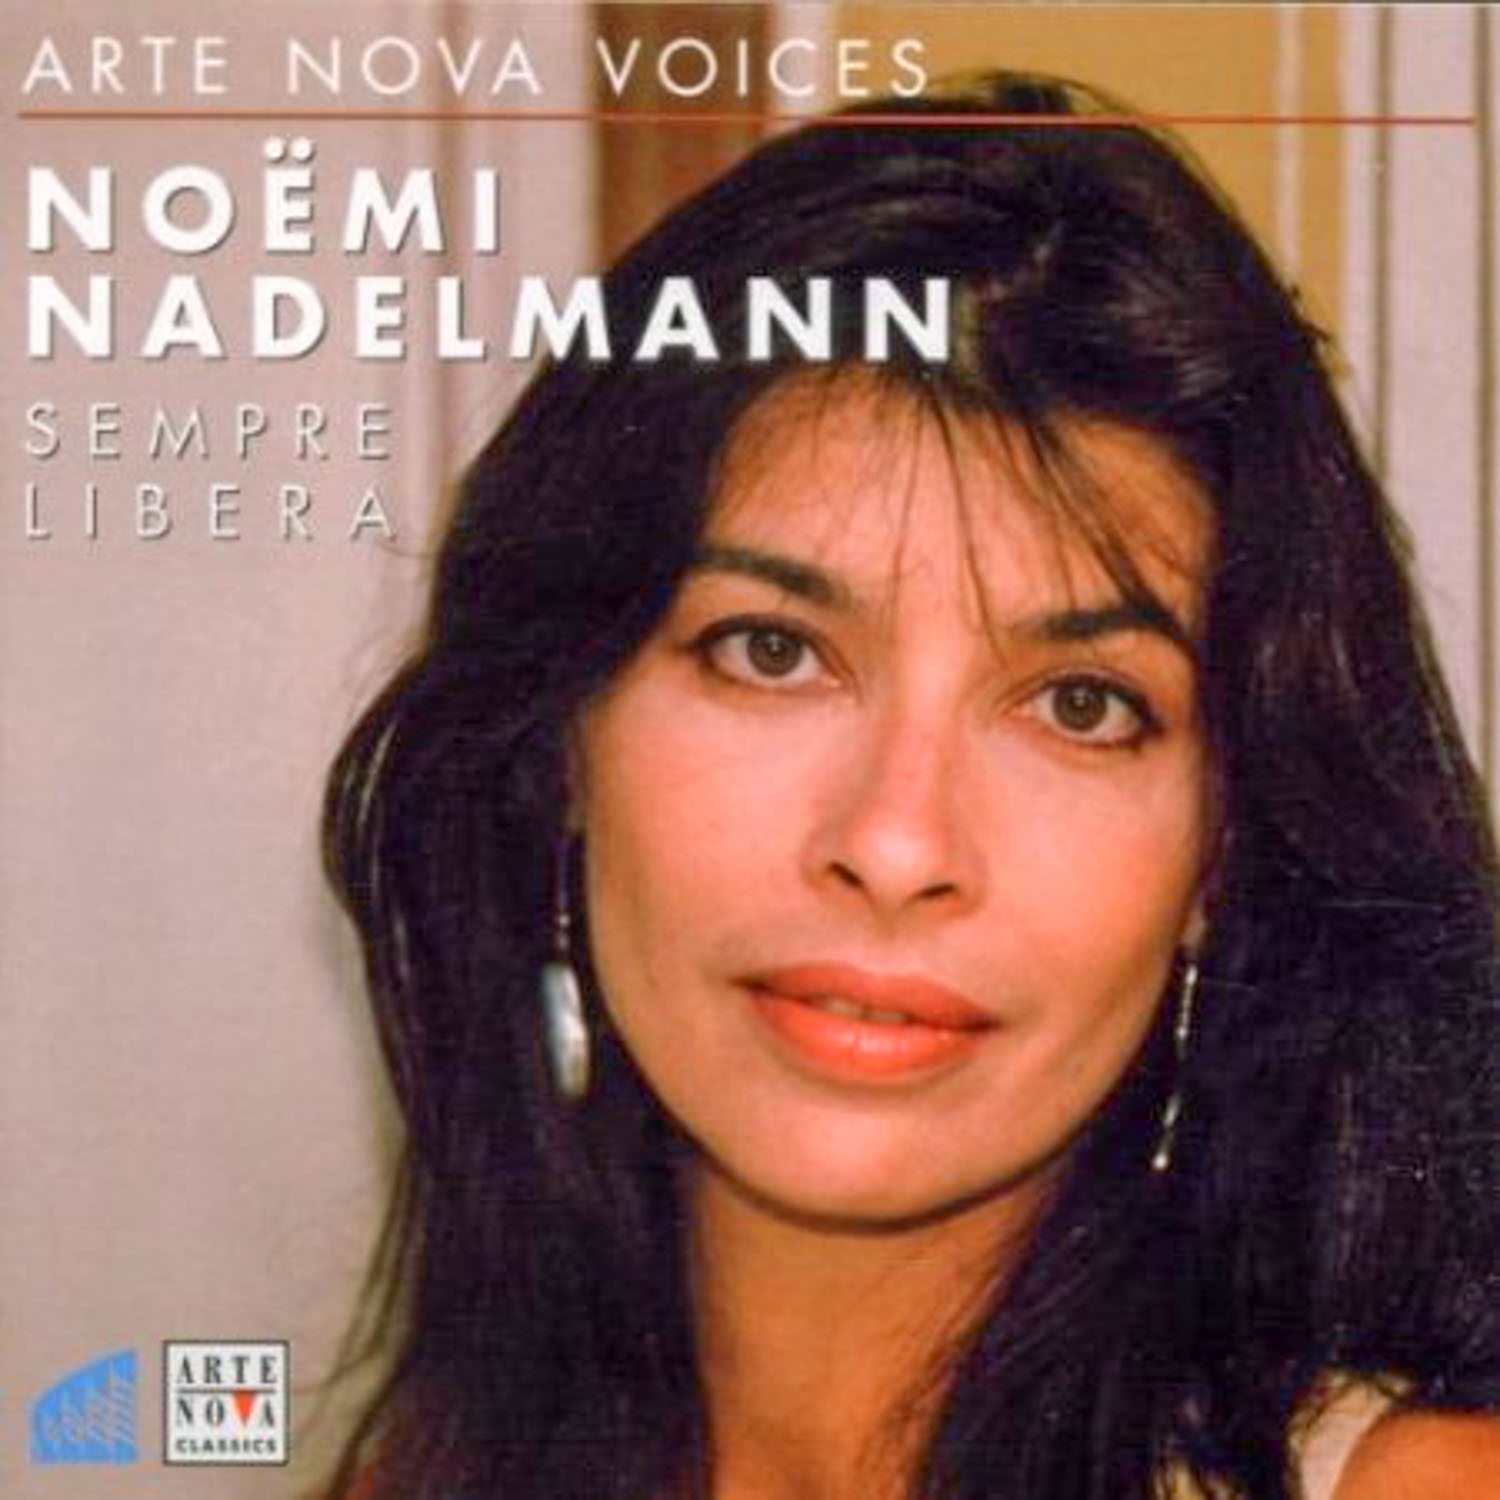 Noemi Nadelmann; Gustav Kuhn, Orchester der Tiroler Festspiele  Sempre libera  *Audio-CD*. 